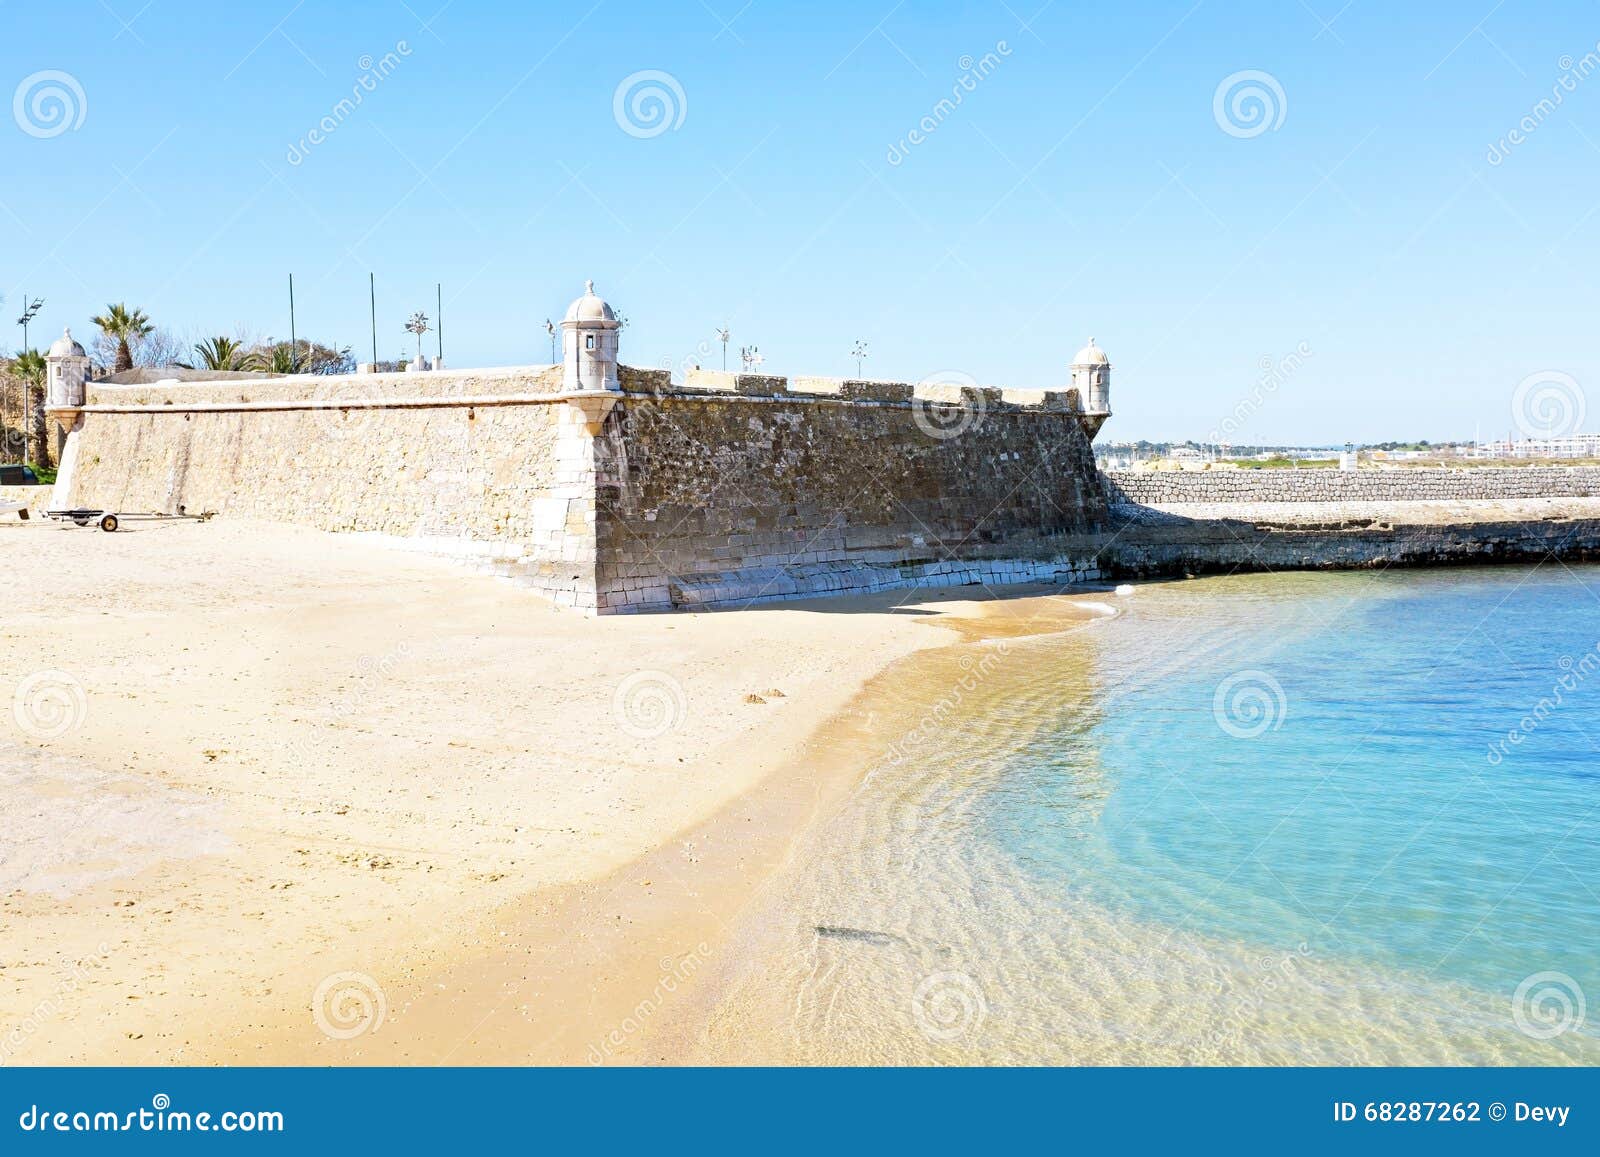 medieval fortaleza da ponta da bandeira at lagos portugal